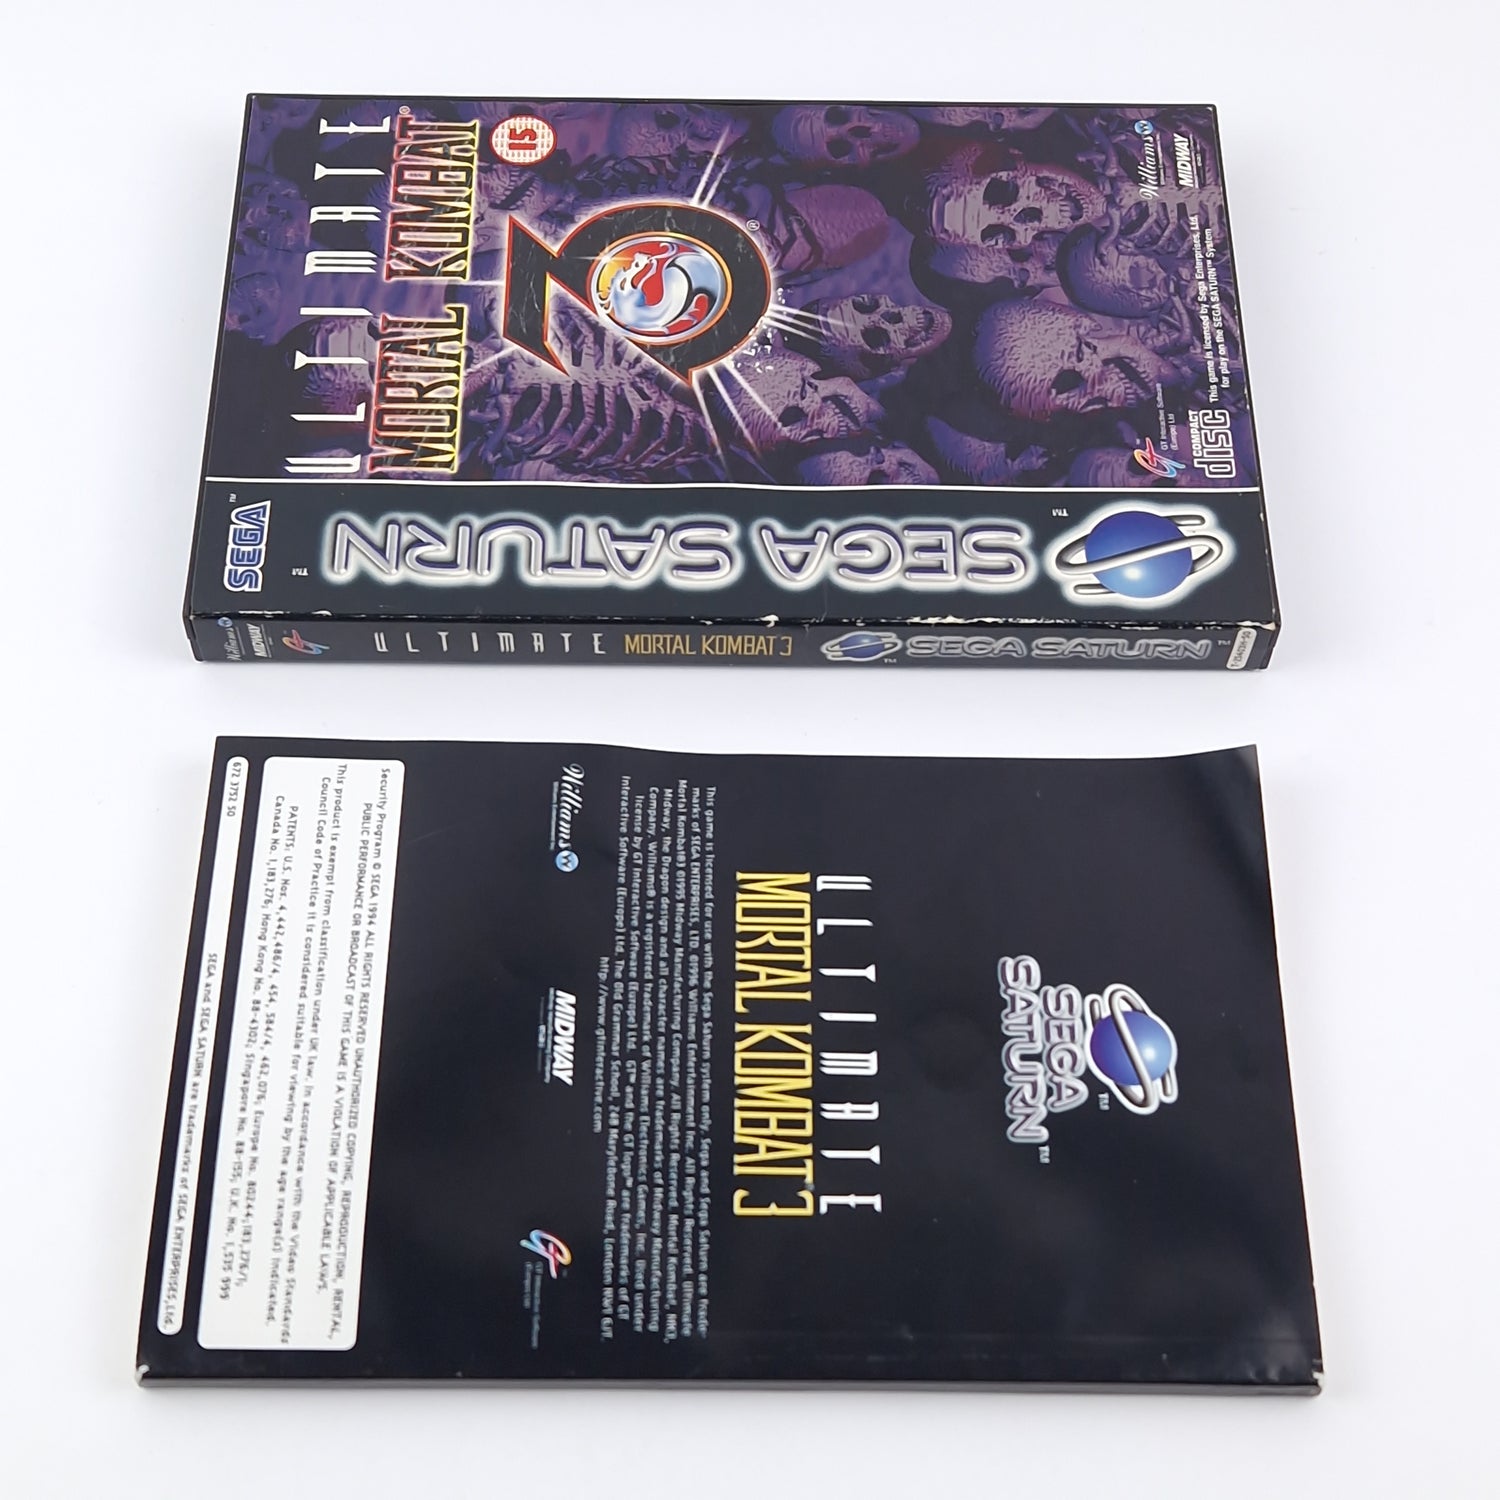 Sega Saturn Game: Ultimate Mortal Kombat - OVP Instructions PAL | CD disk USK18